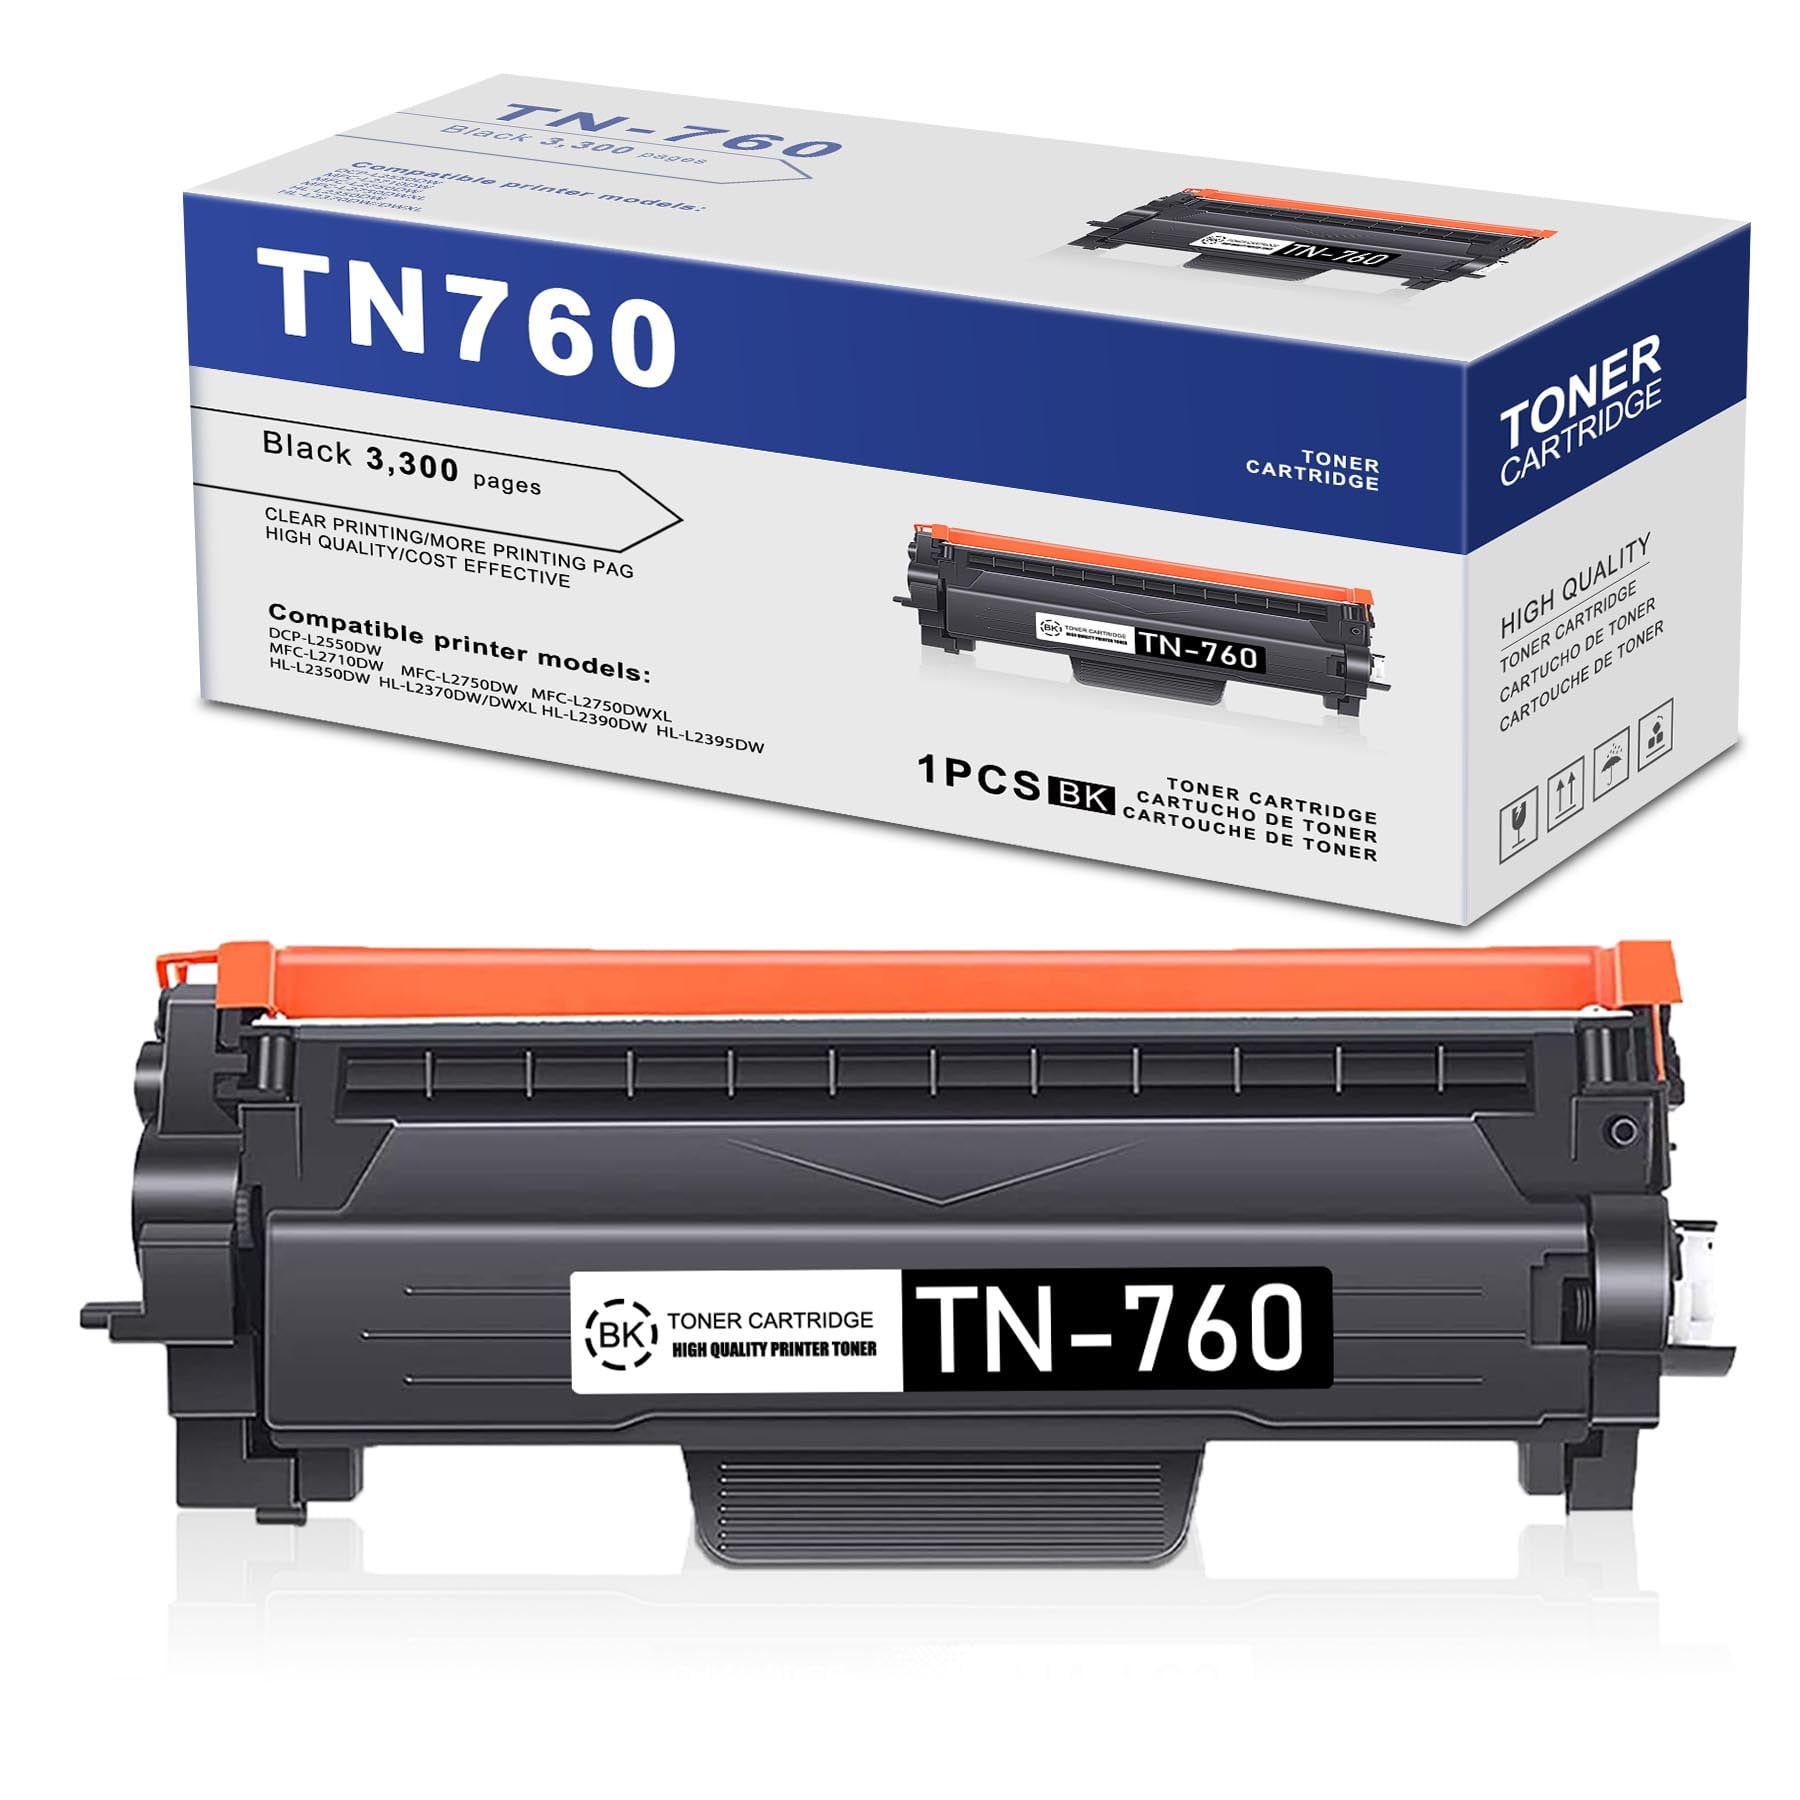 TN760 TN730 Black 1 Pack TN 760 TN-760 Toner Cartridge Compatible  Replacement for Brother DCP-L2550DW MFC-L2710DW MFC-L2750DW L2750DWXL